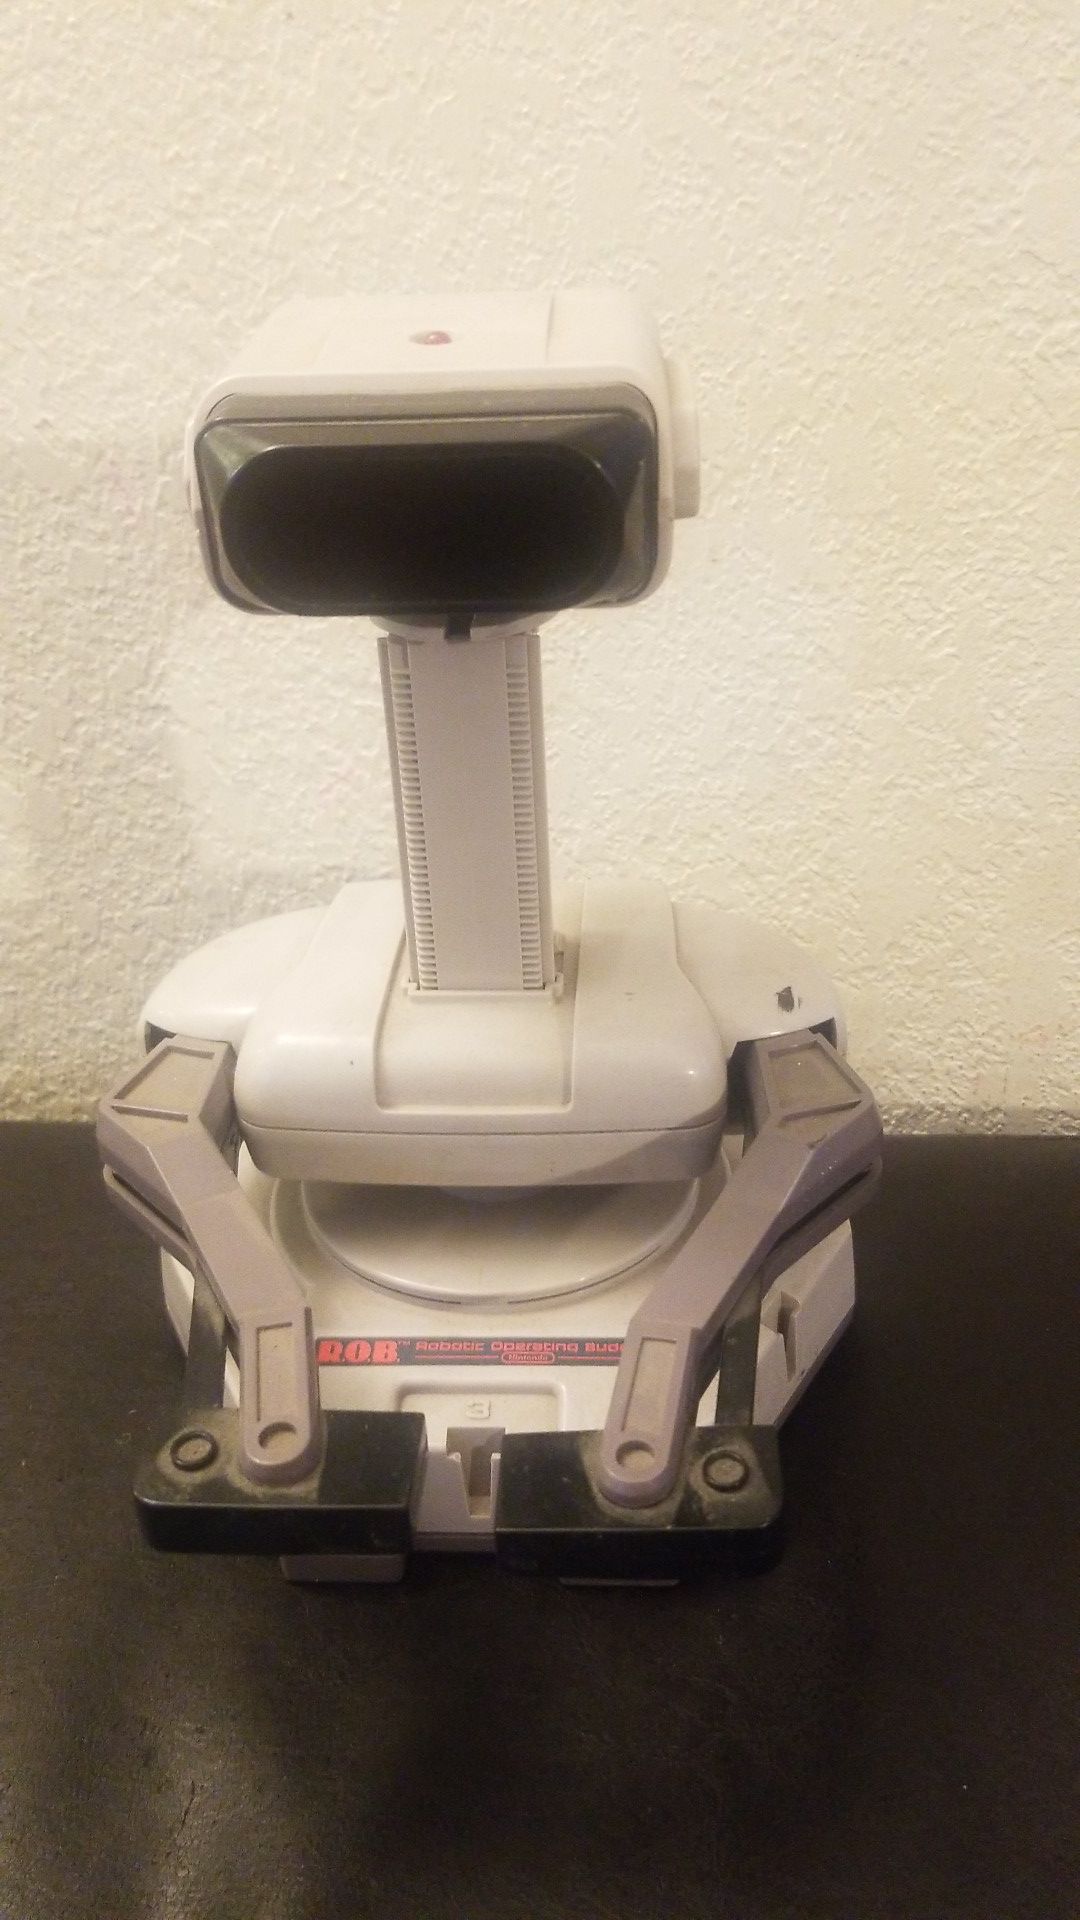 Nintendo R.O.B. the Robot